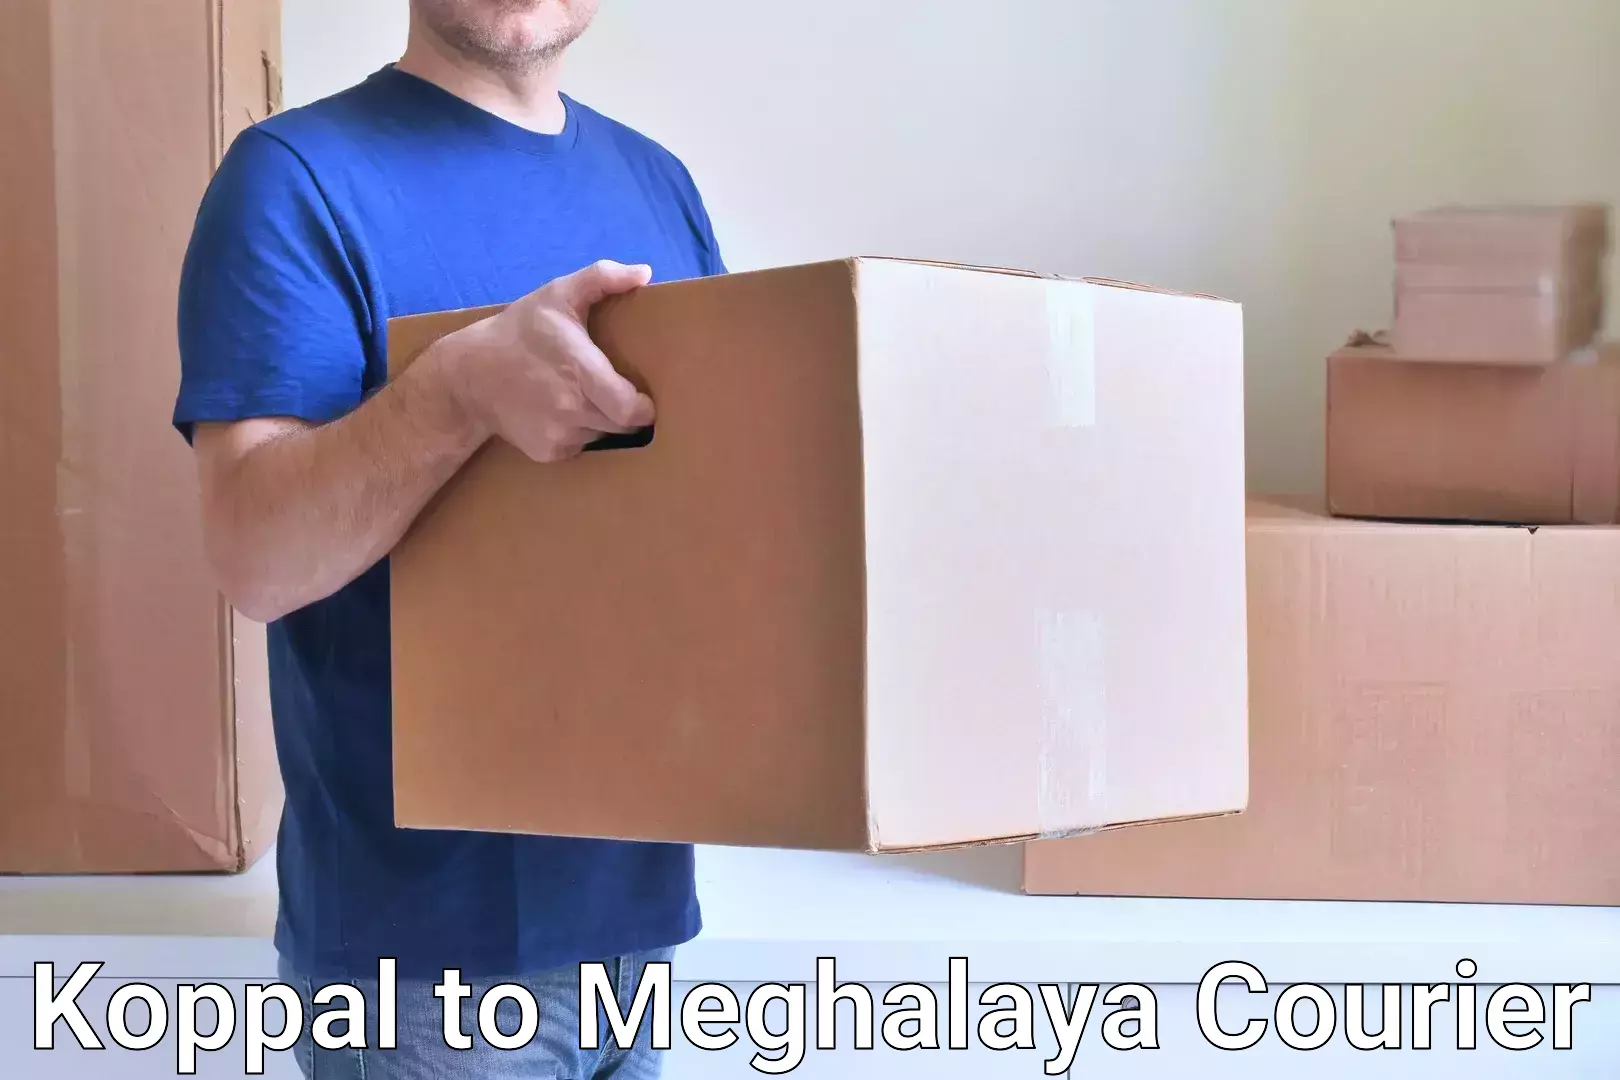 Business delivery service Koppal to Meghalaya